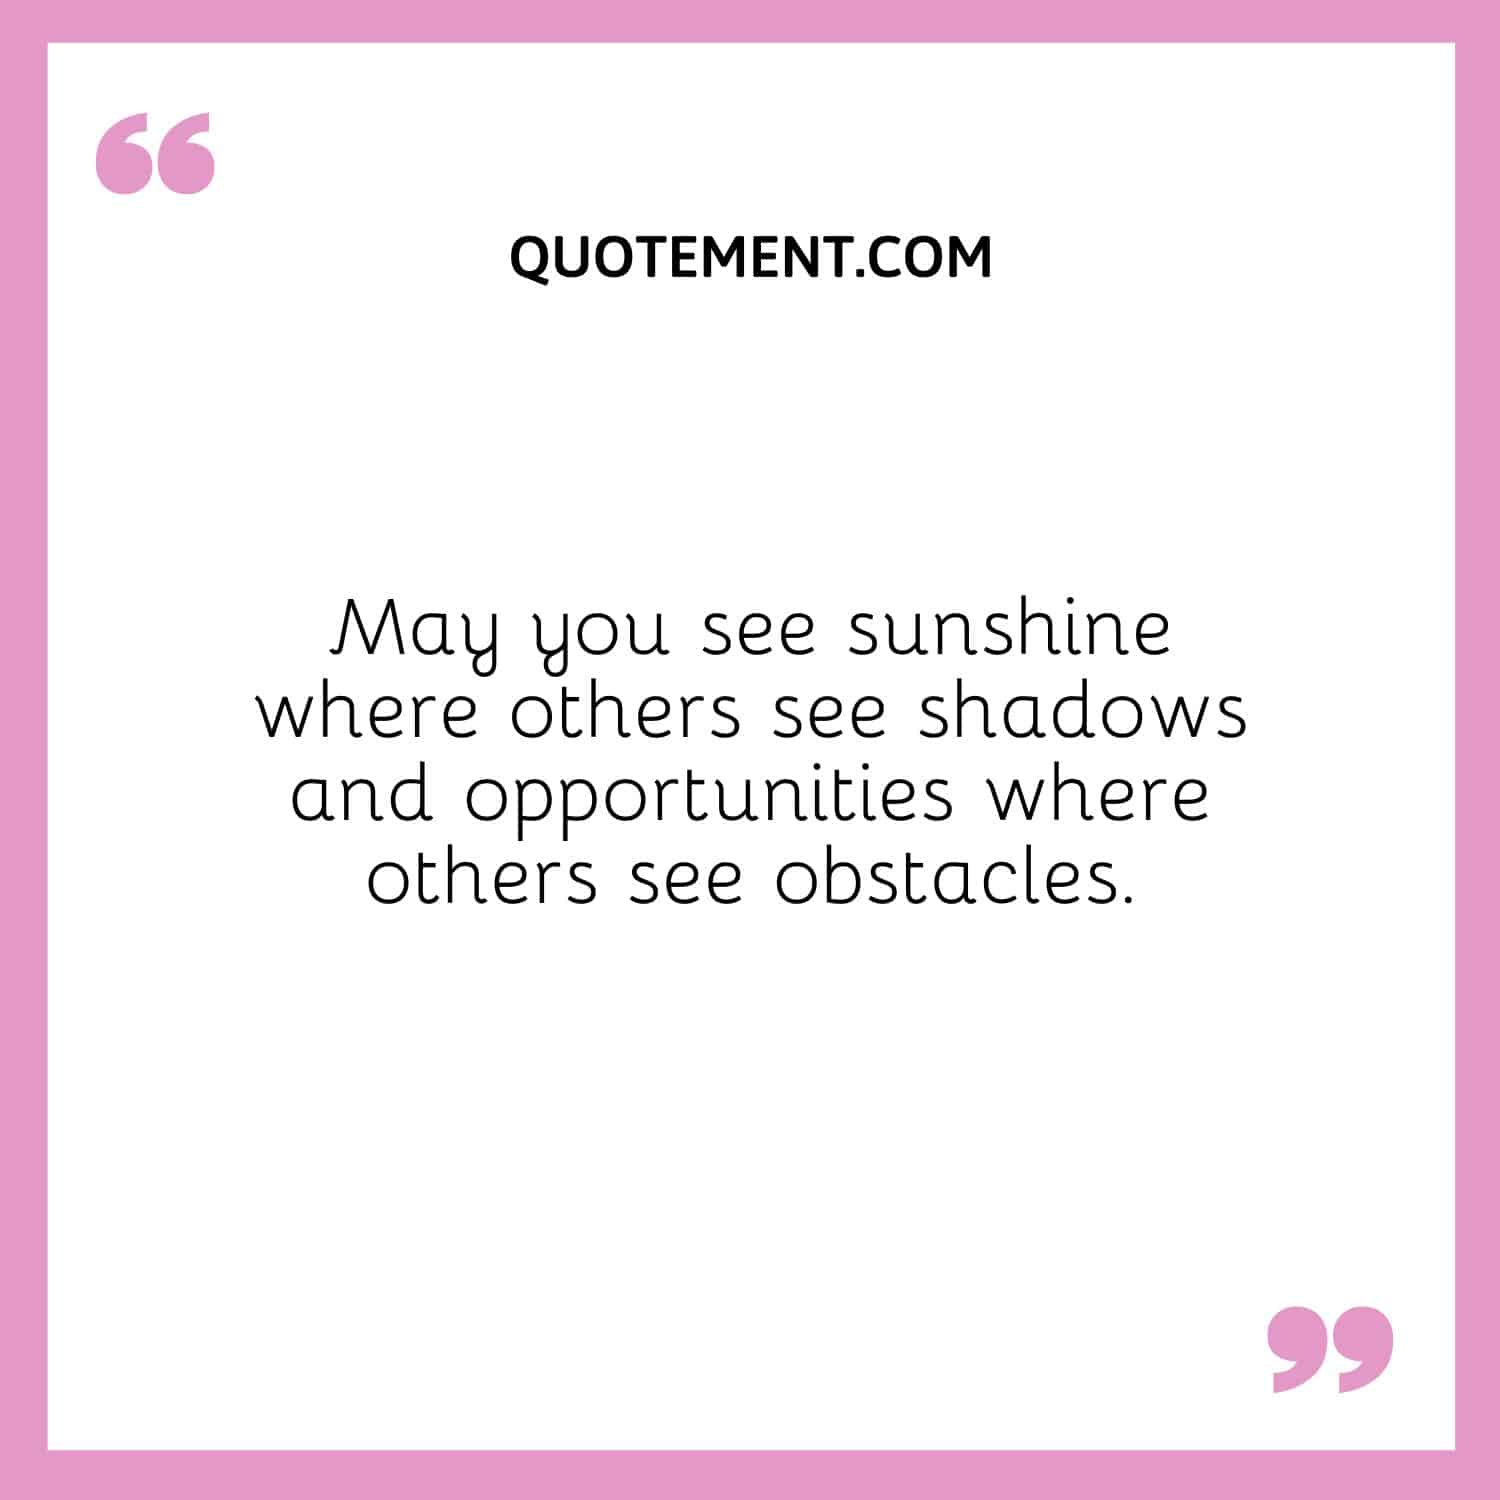 Que veas sol donde otros ven sombras y oportunidades donde otros ven obstáculos.